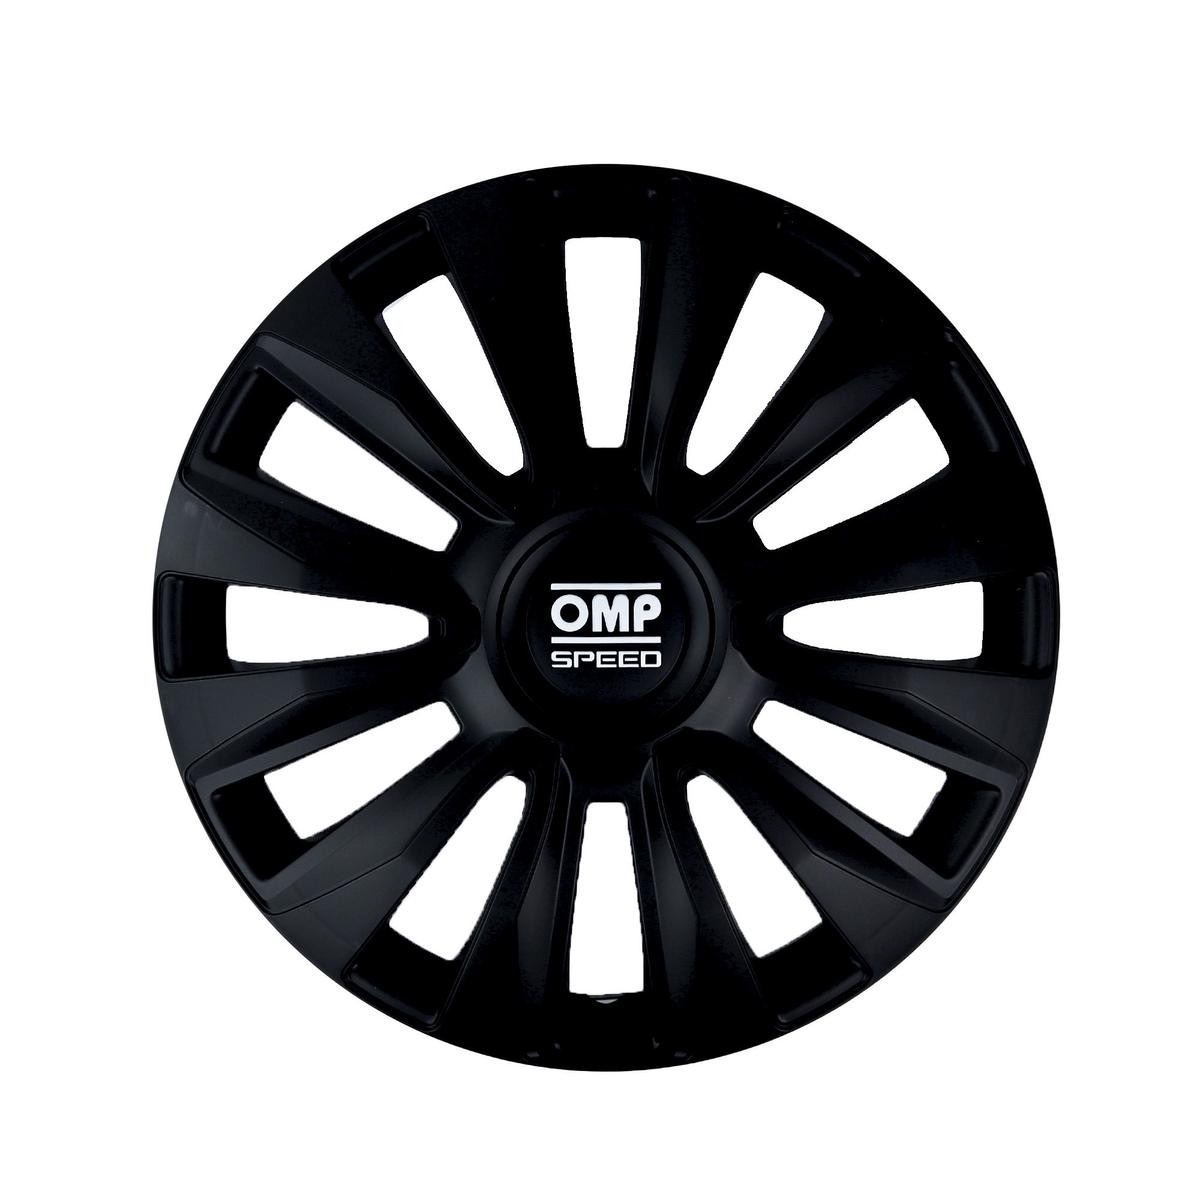 OMP OMPS07011301 Car wheel trims BMW 5 Saloon (F10) 13 Inch black